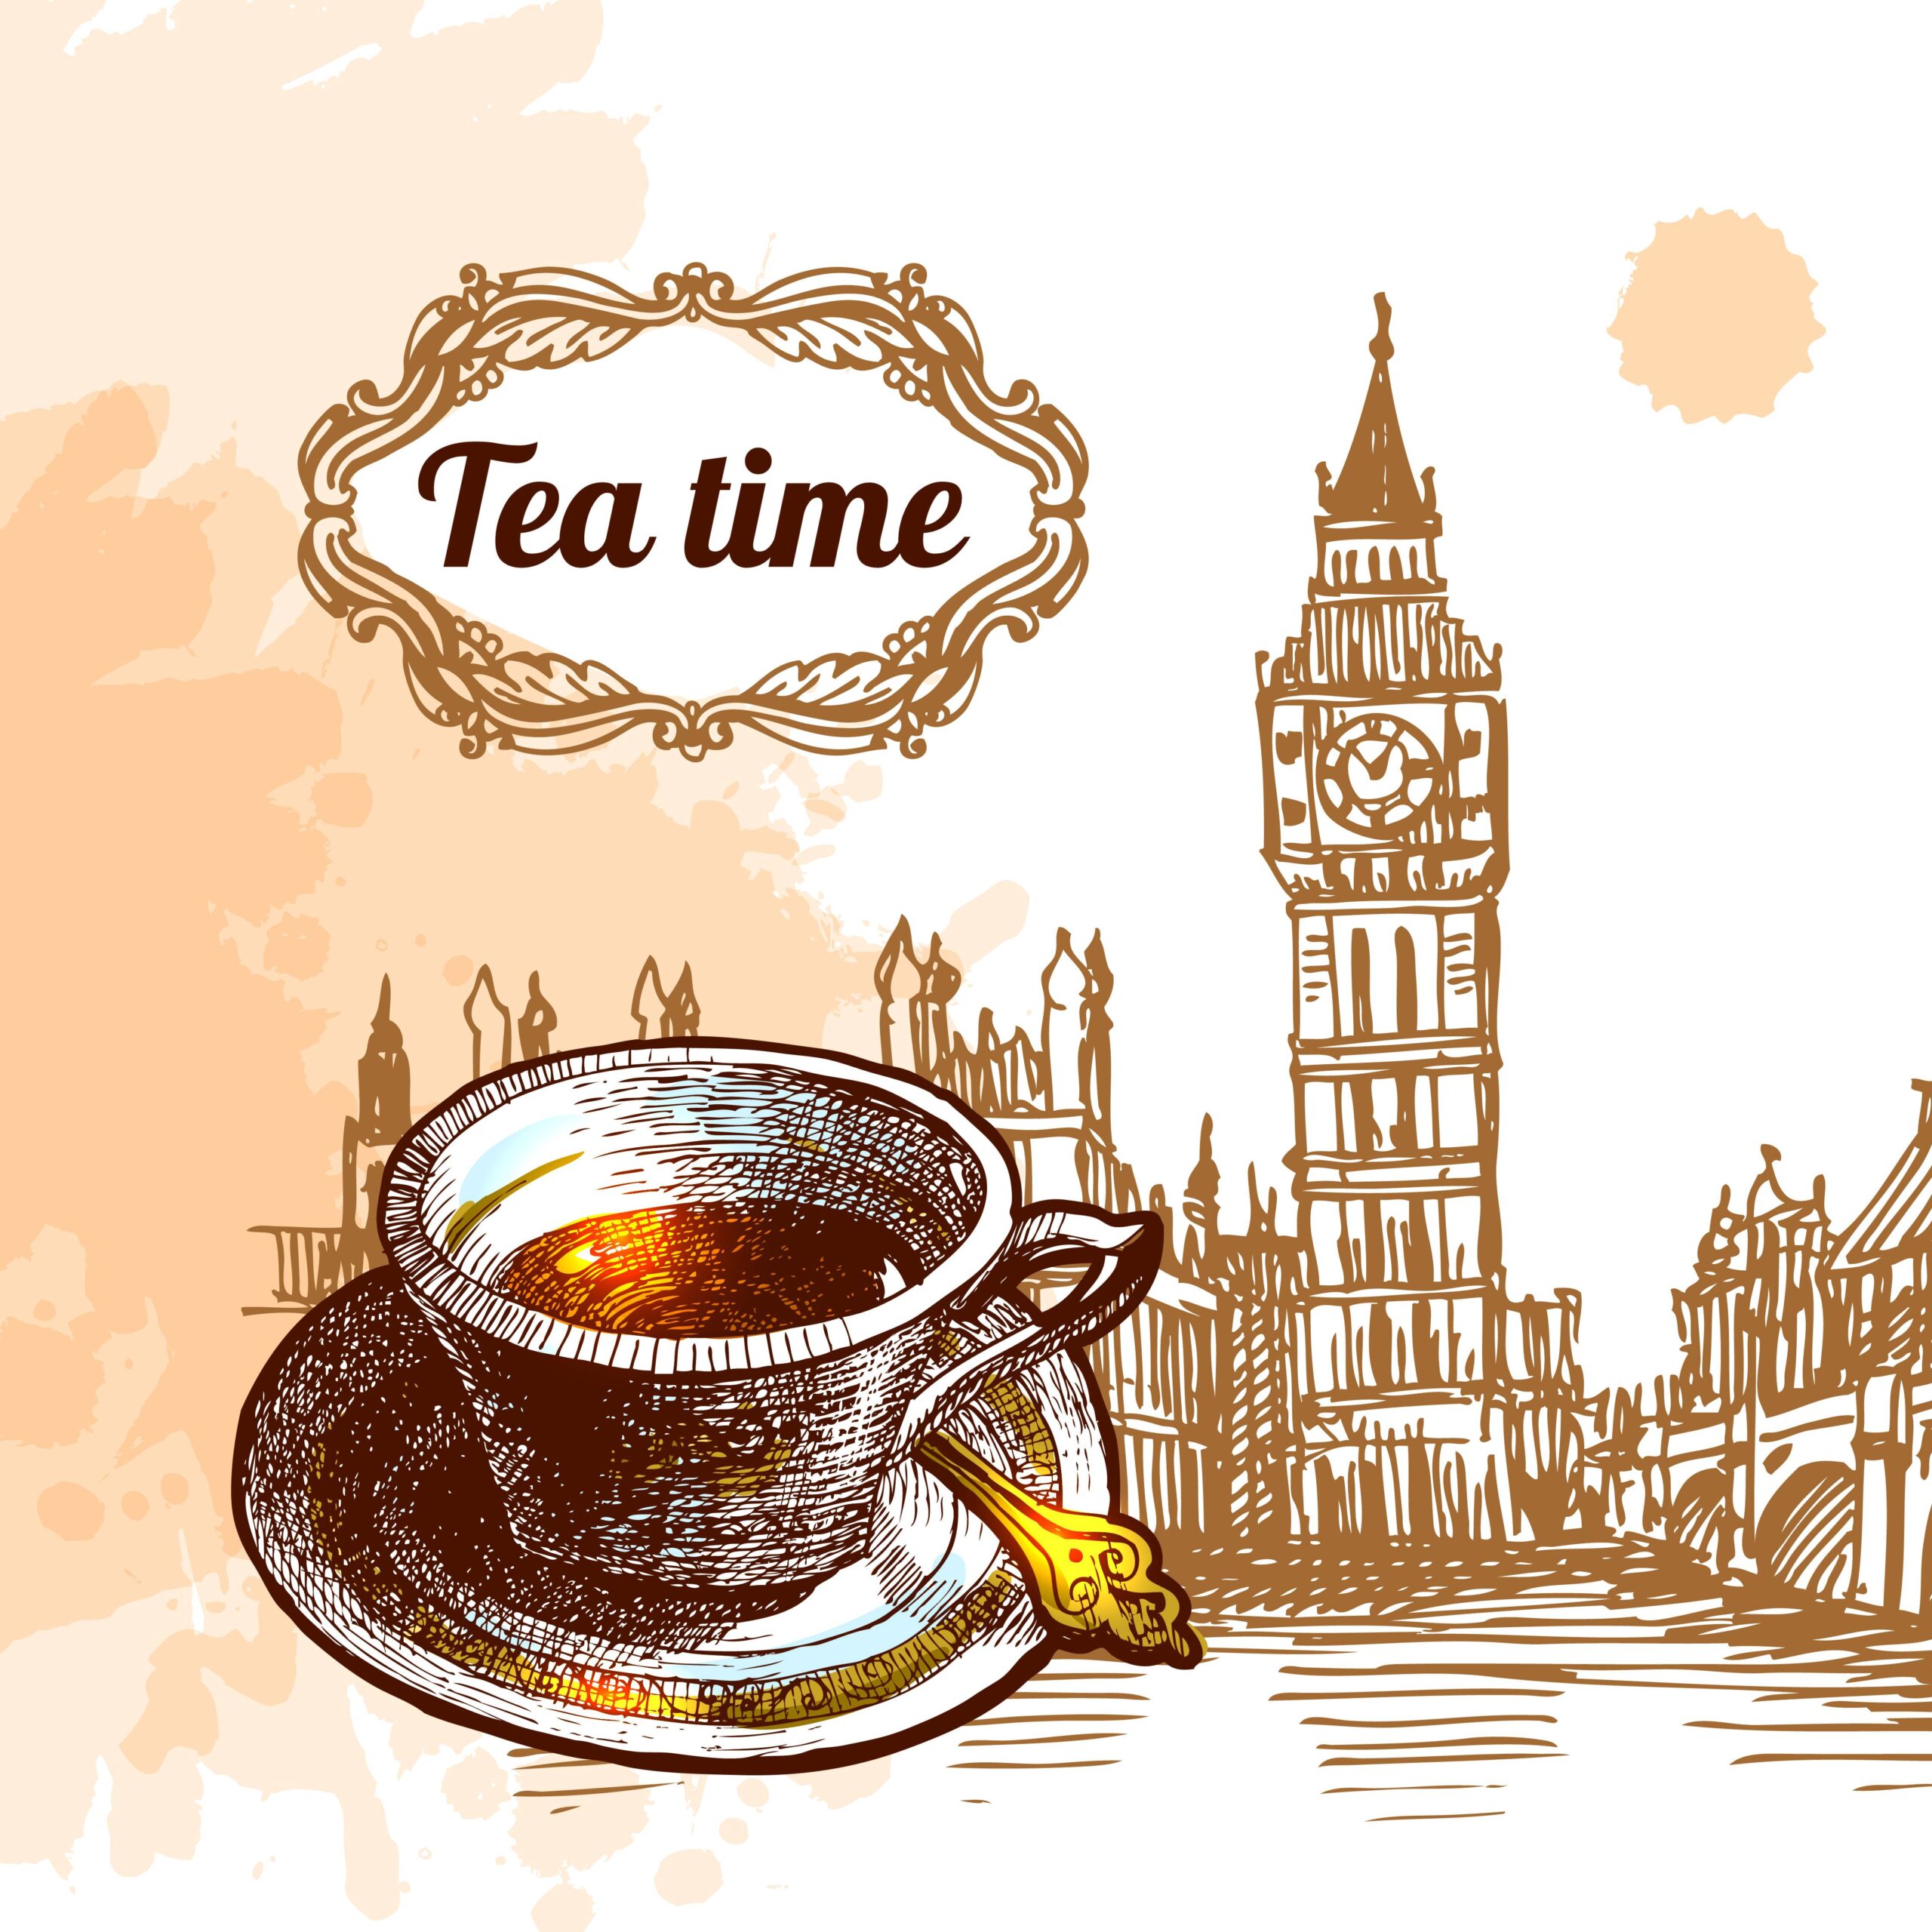 איפה לשתות תה בלונדון?, לונדון, תה, לונדונר, תה בריטי,